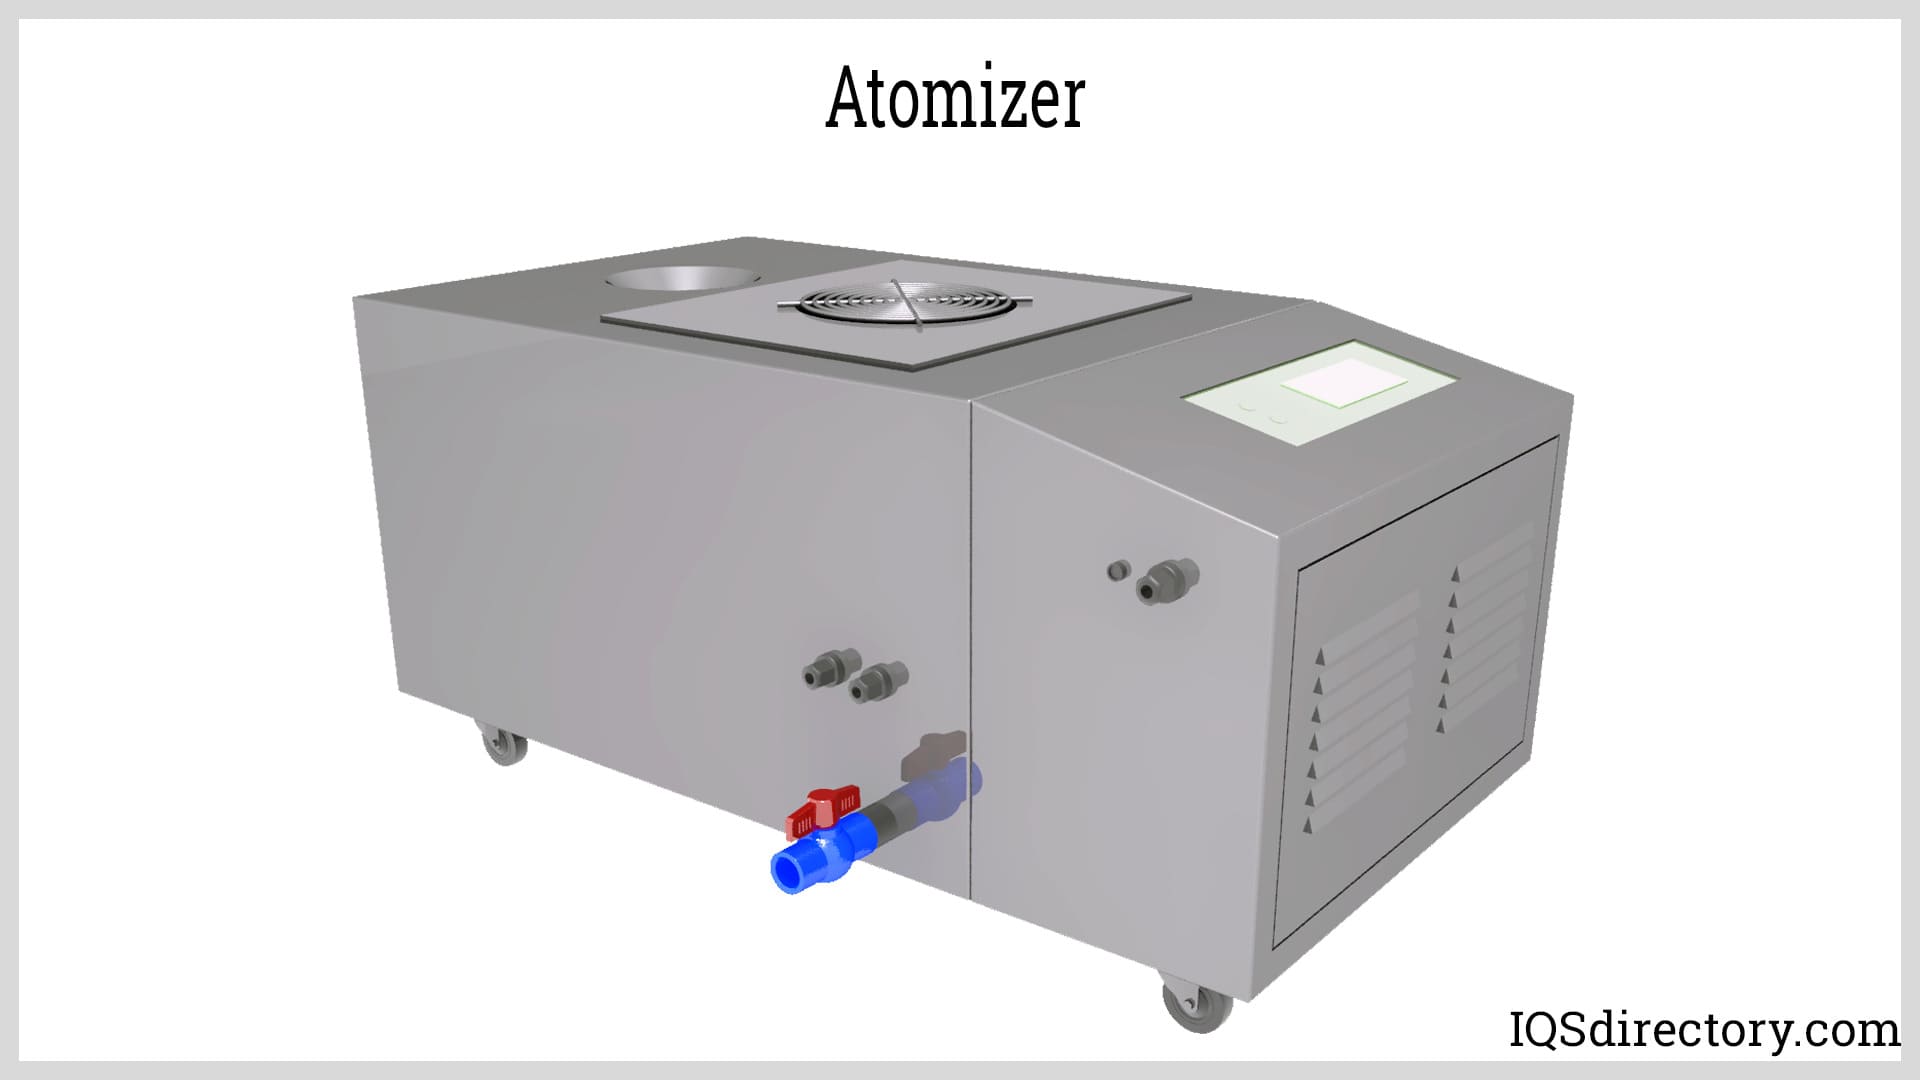 Atomizer